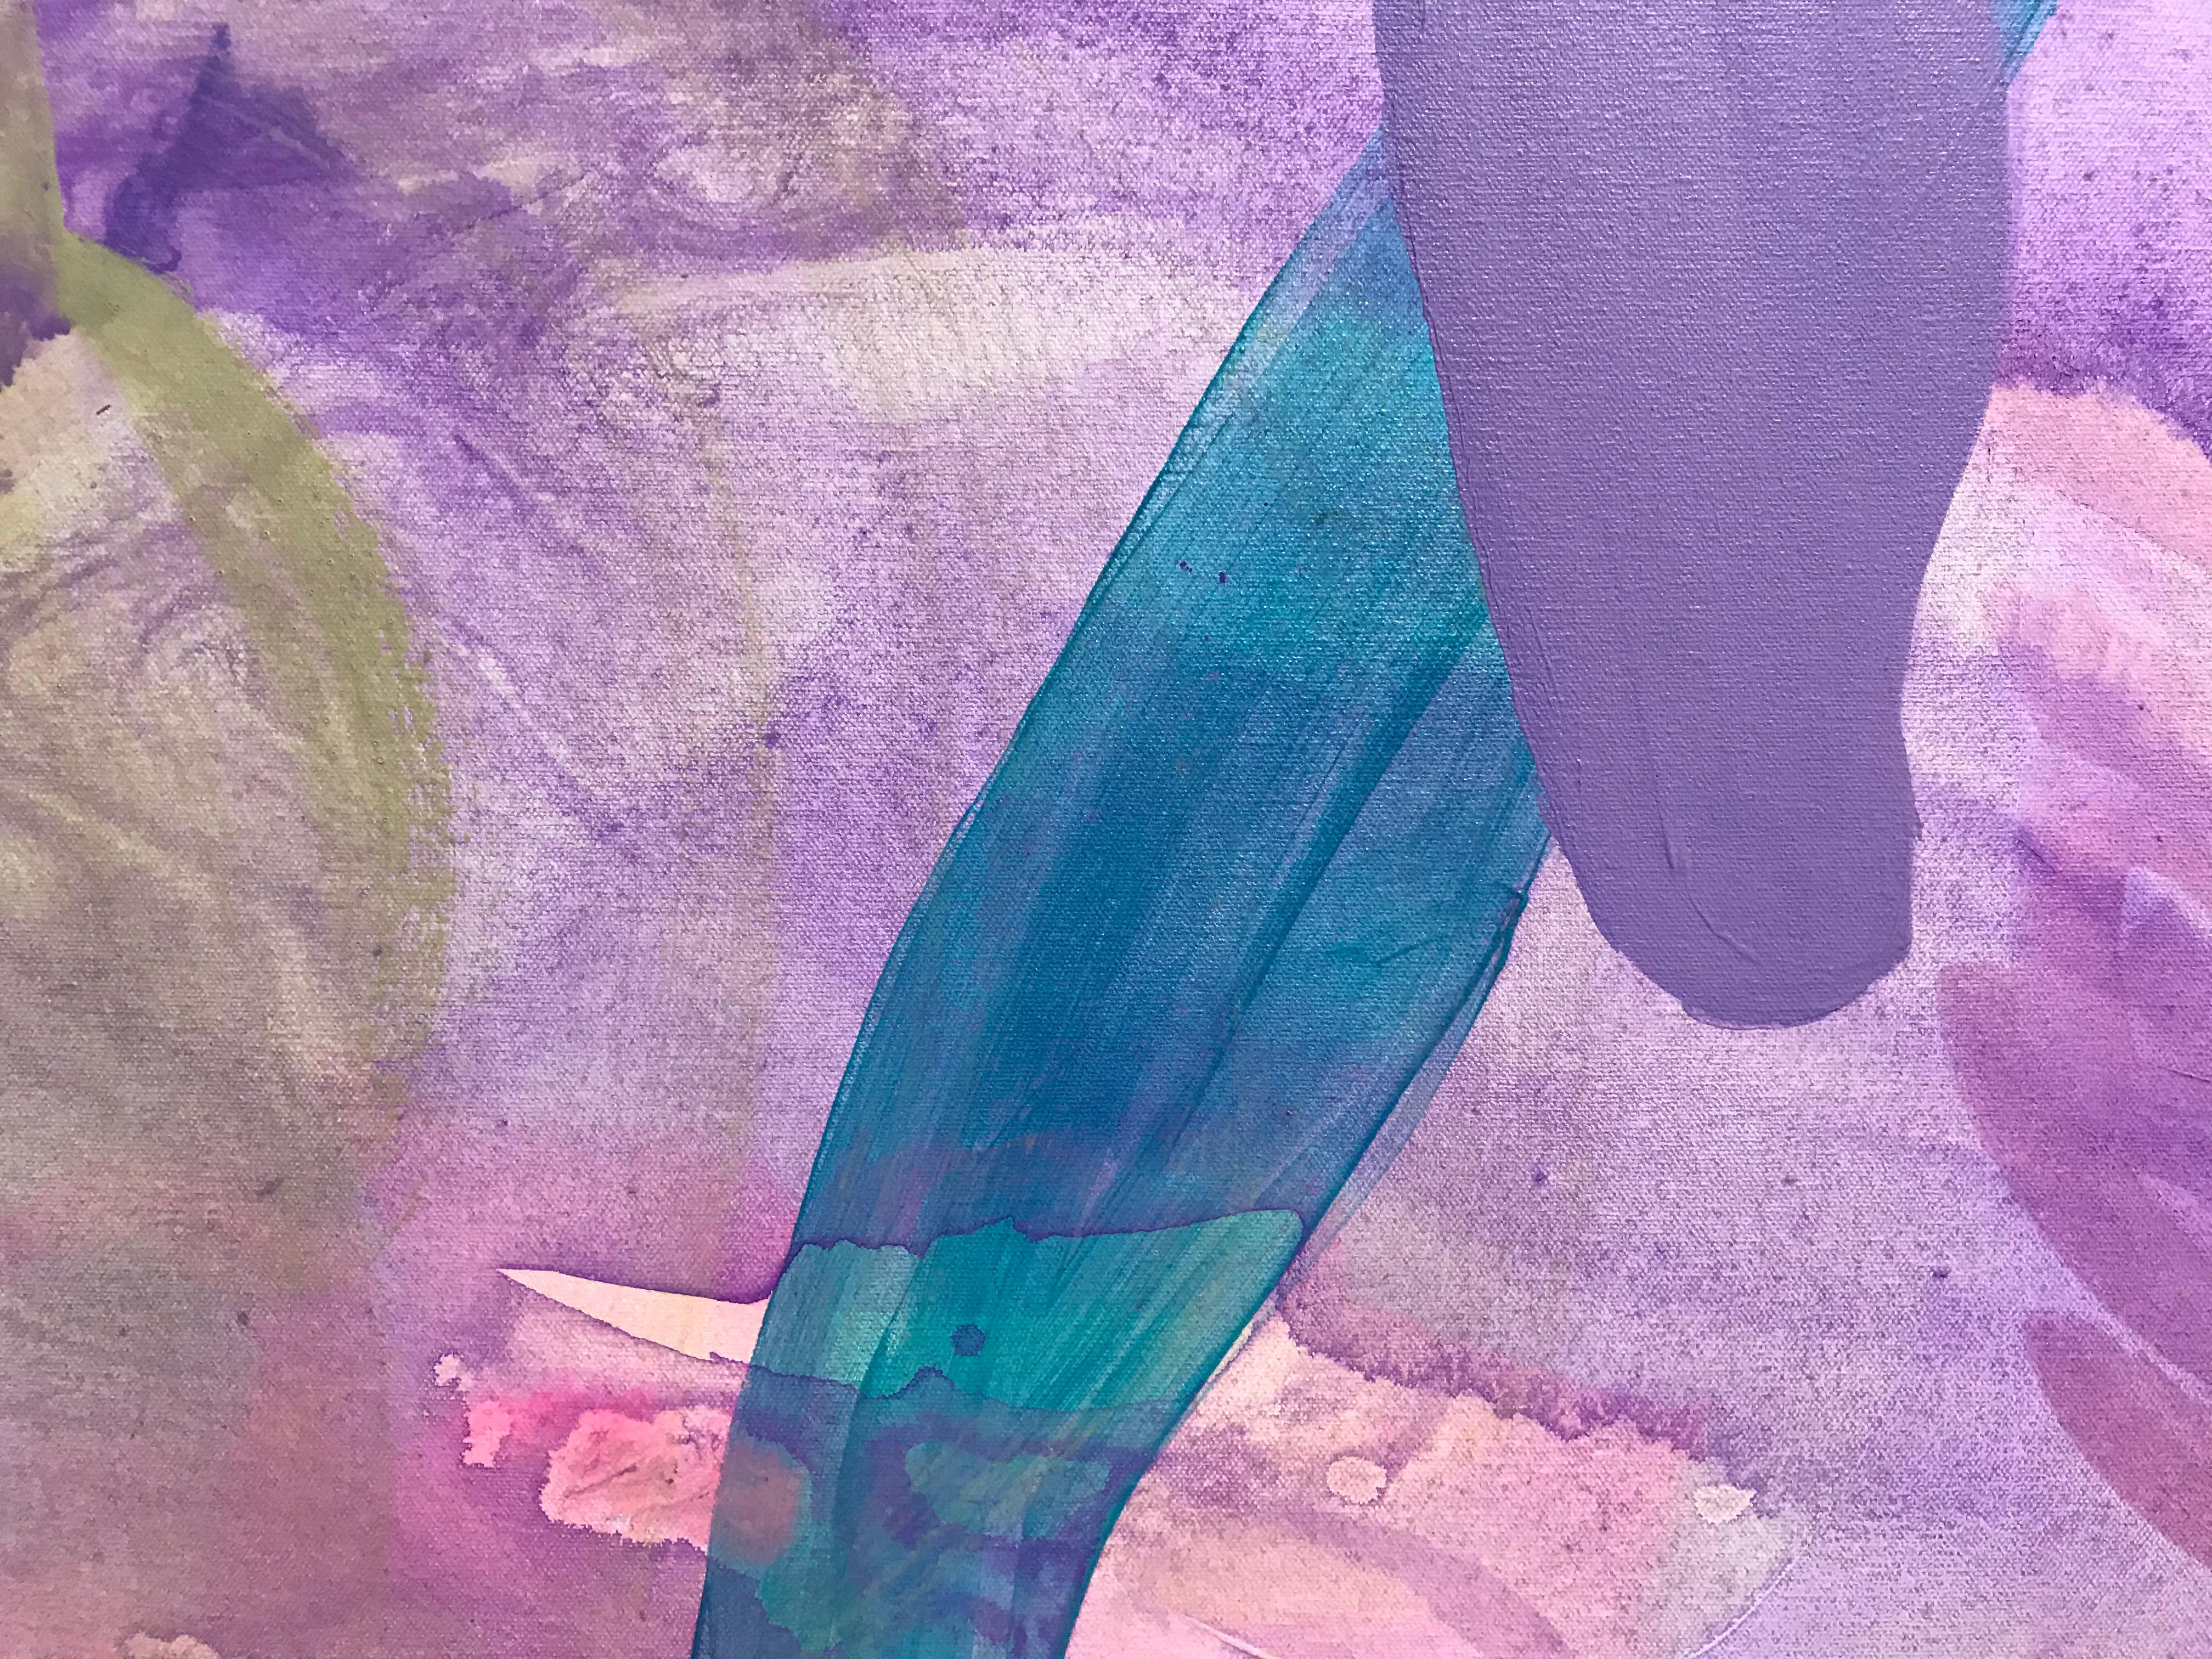 Peinture abstraite contemporaine « Aquatic Forest » en violet, bleu turquoise et rose - Abstrait Painting par Debra Drexler